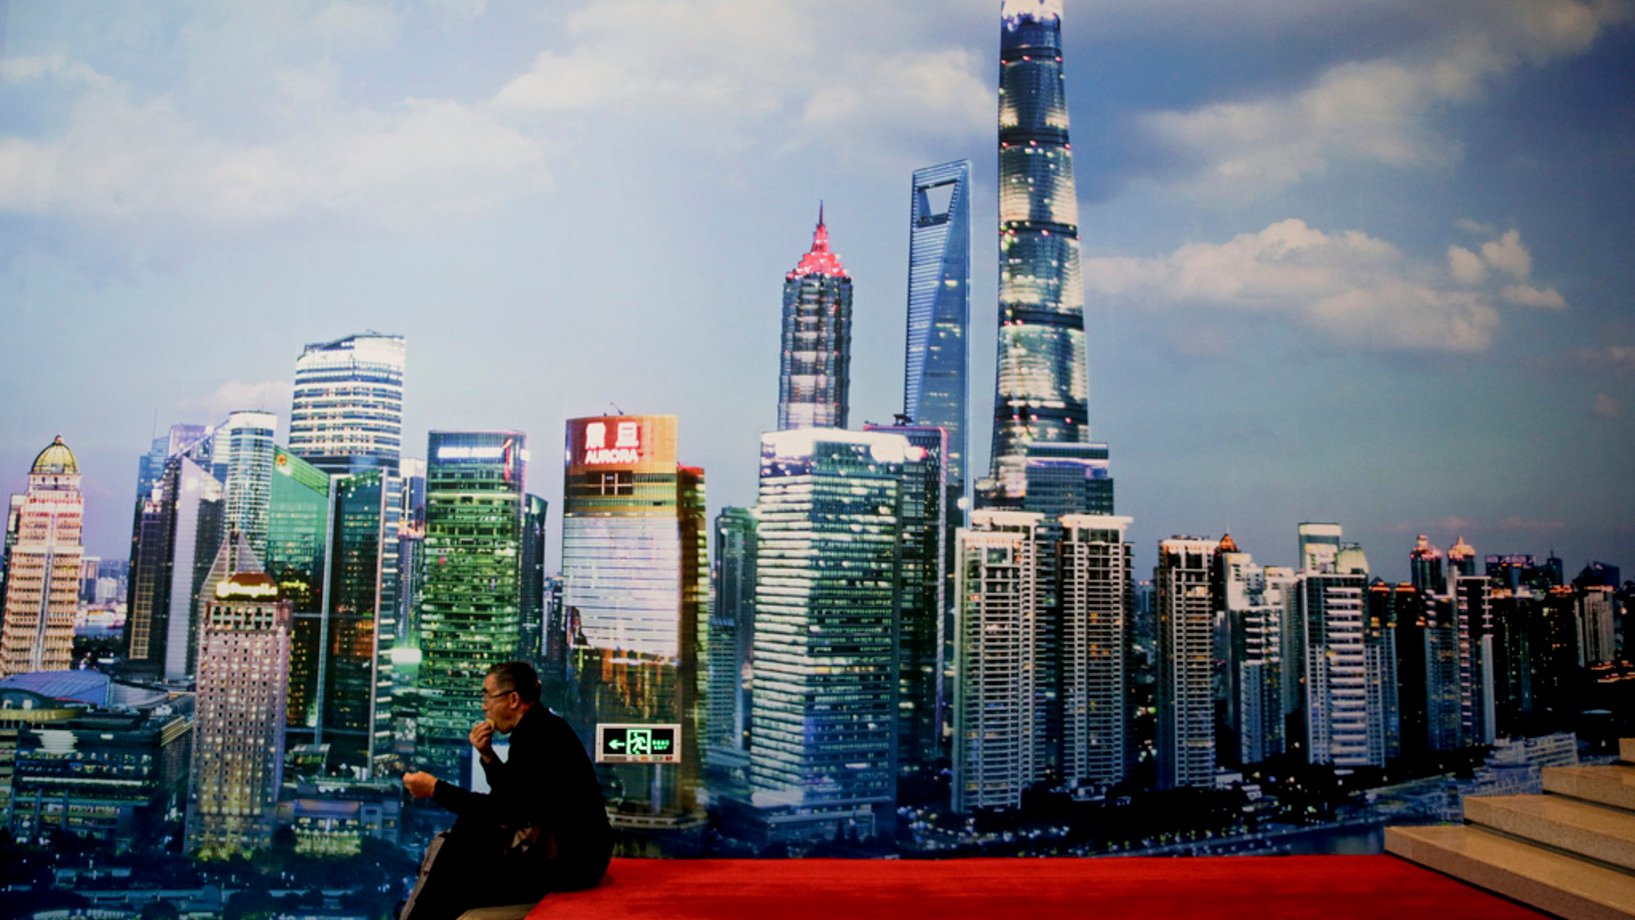 Ein Museumsbesucher macht Pause vor dem Bild des Financial District Shanghais, das in der Ausstellung zum 40. Jahrestag der Öffnung und Reform Chinas im Pekinger Nationalmuseum gezeigt wird. (Keystone/AP, Andy Wong)